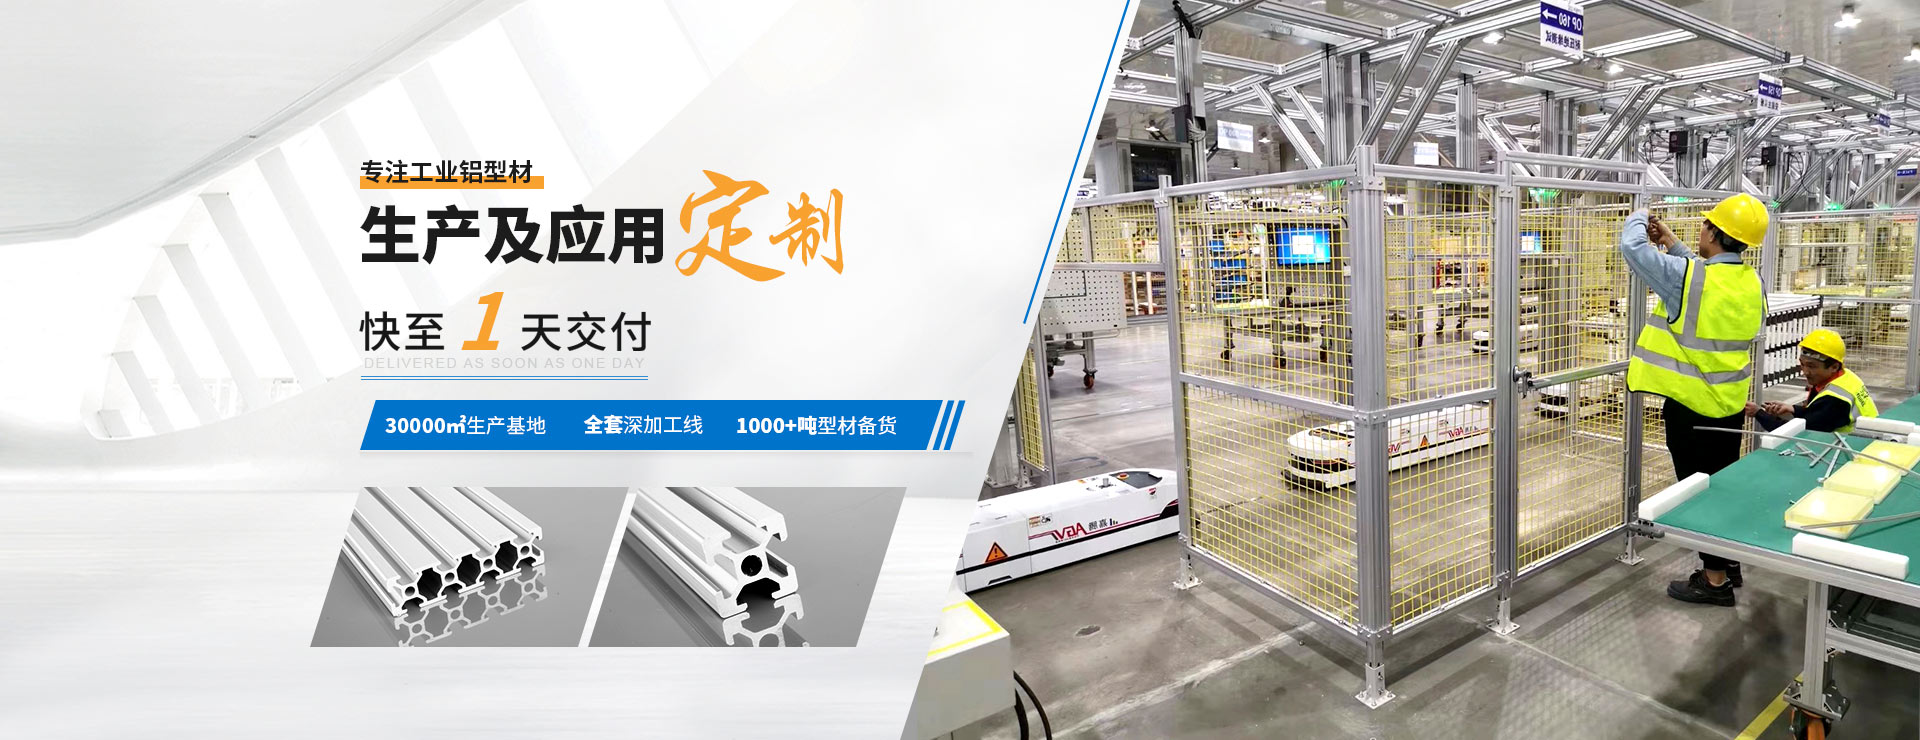 啟(qi)域專(zhuan)注工業鋁型材生產及應用定制快至(zhi)1天交付